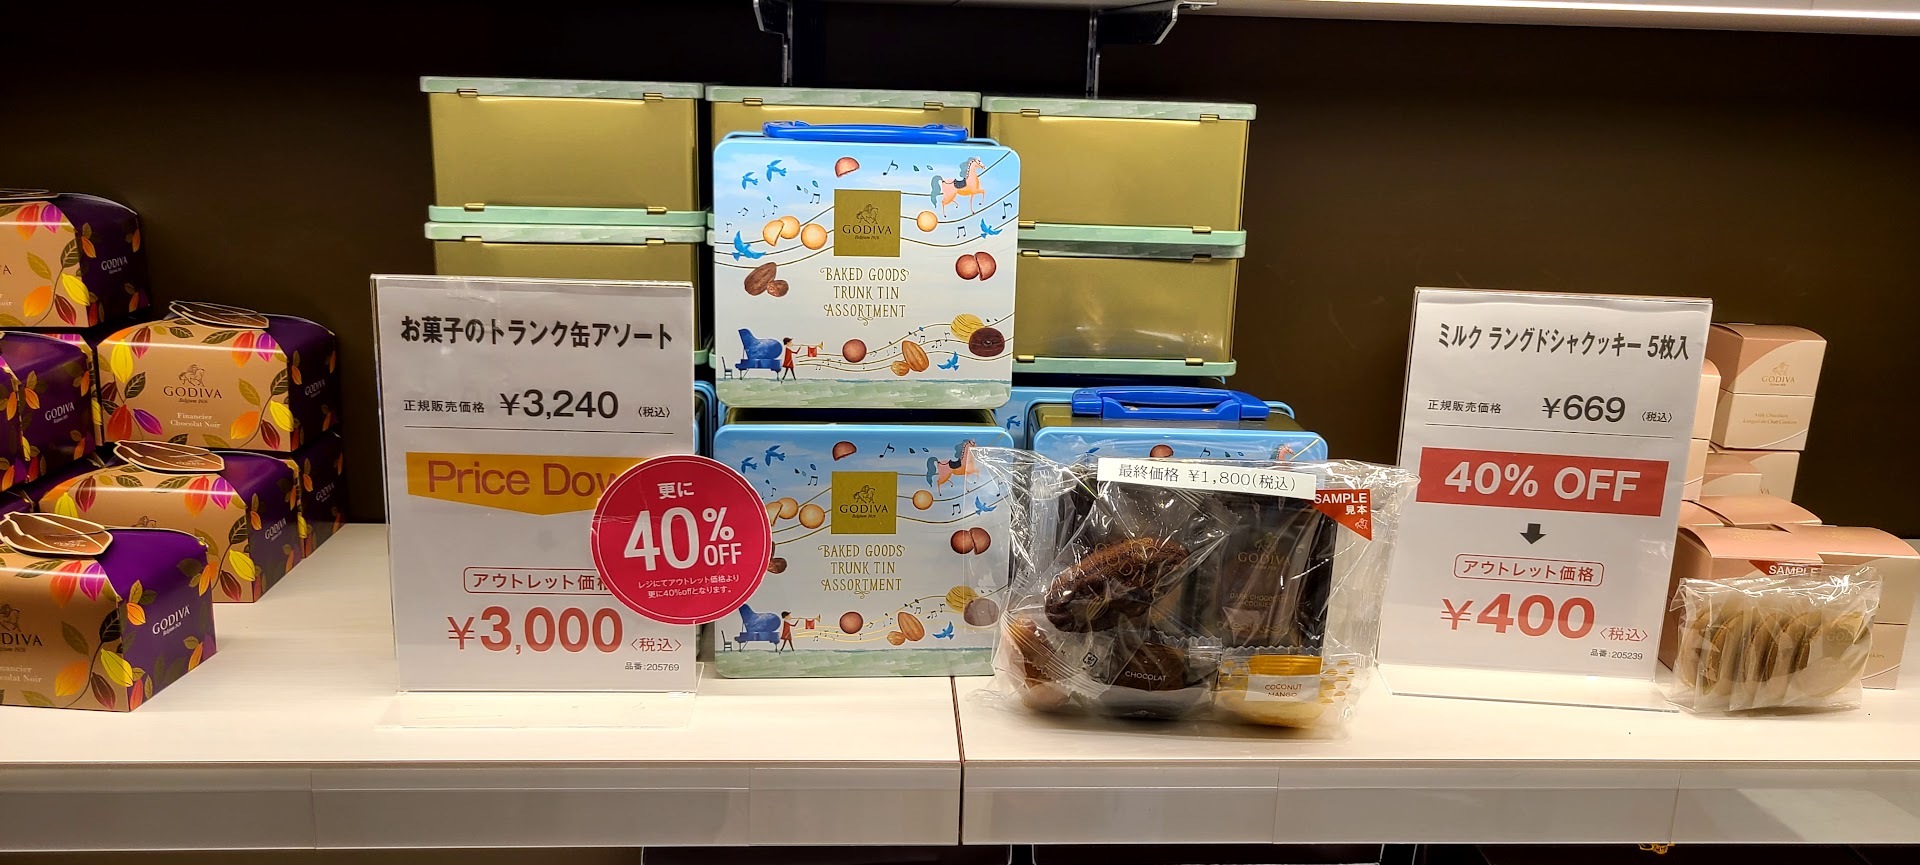 ゴディバ御殿場プレミアムアウトレット激安品 (19)1800円のクッキー缶